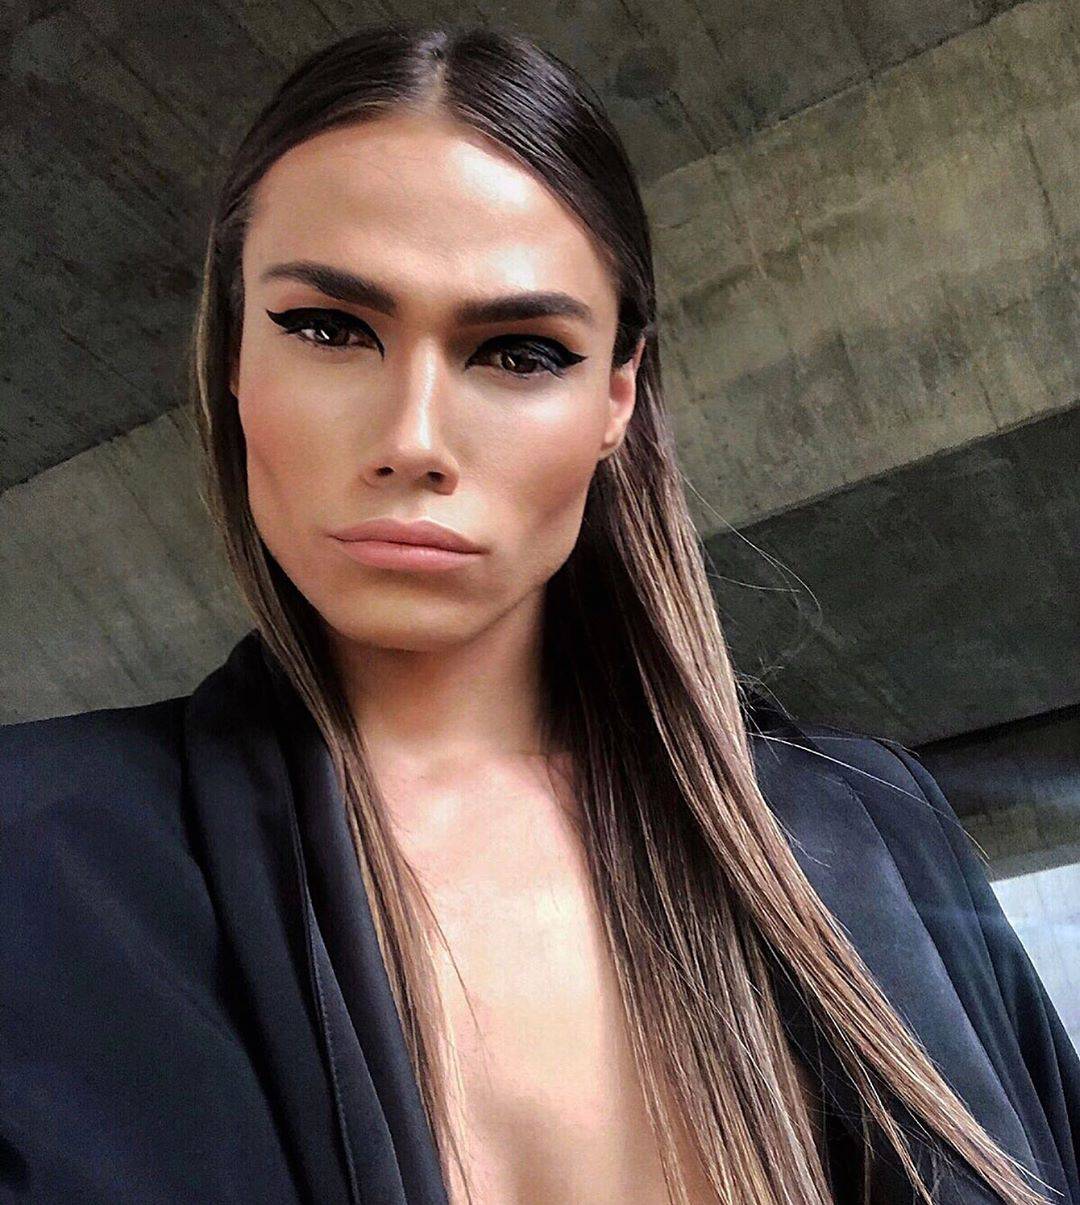 Srpski model: 'Nisam trans. Ja sam muškarac koji je drugačiji'